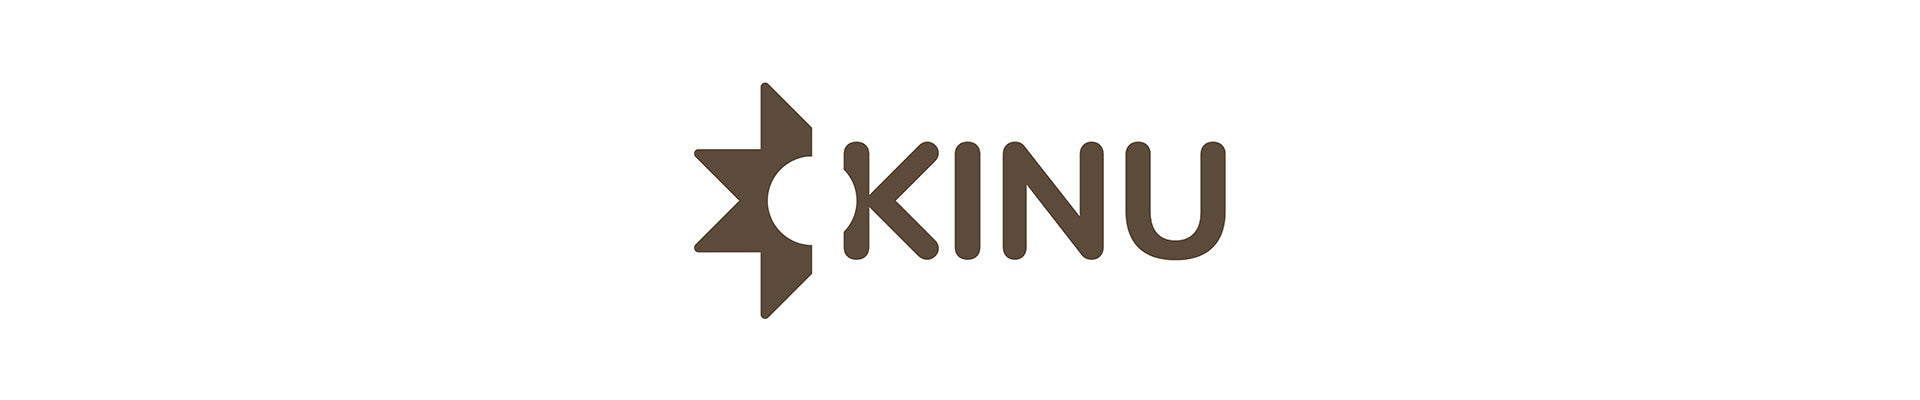 Das Logo der Handmühlen Marke Kinu